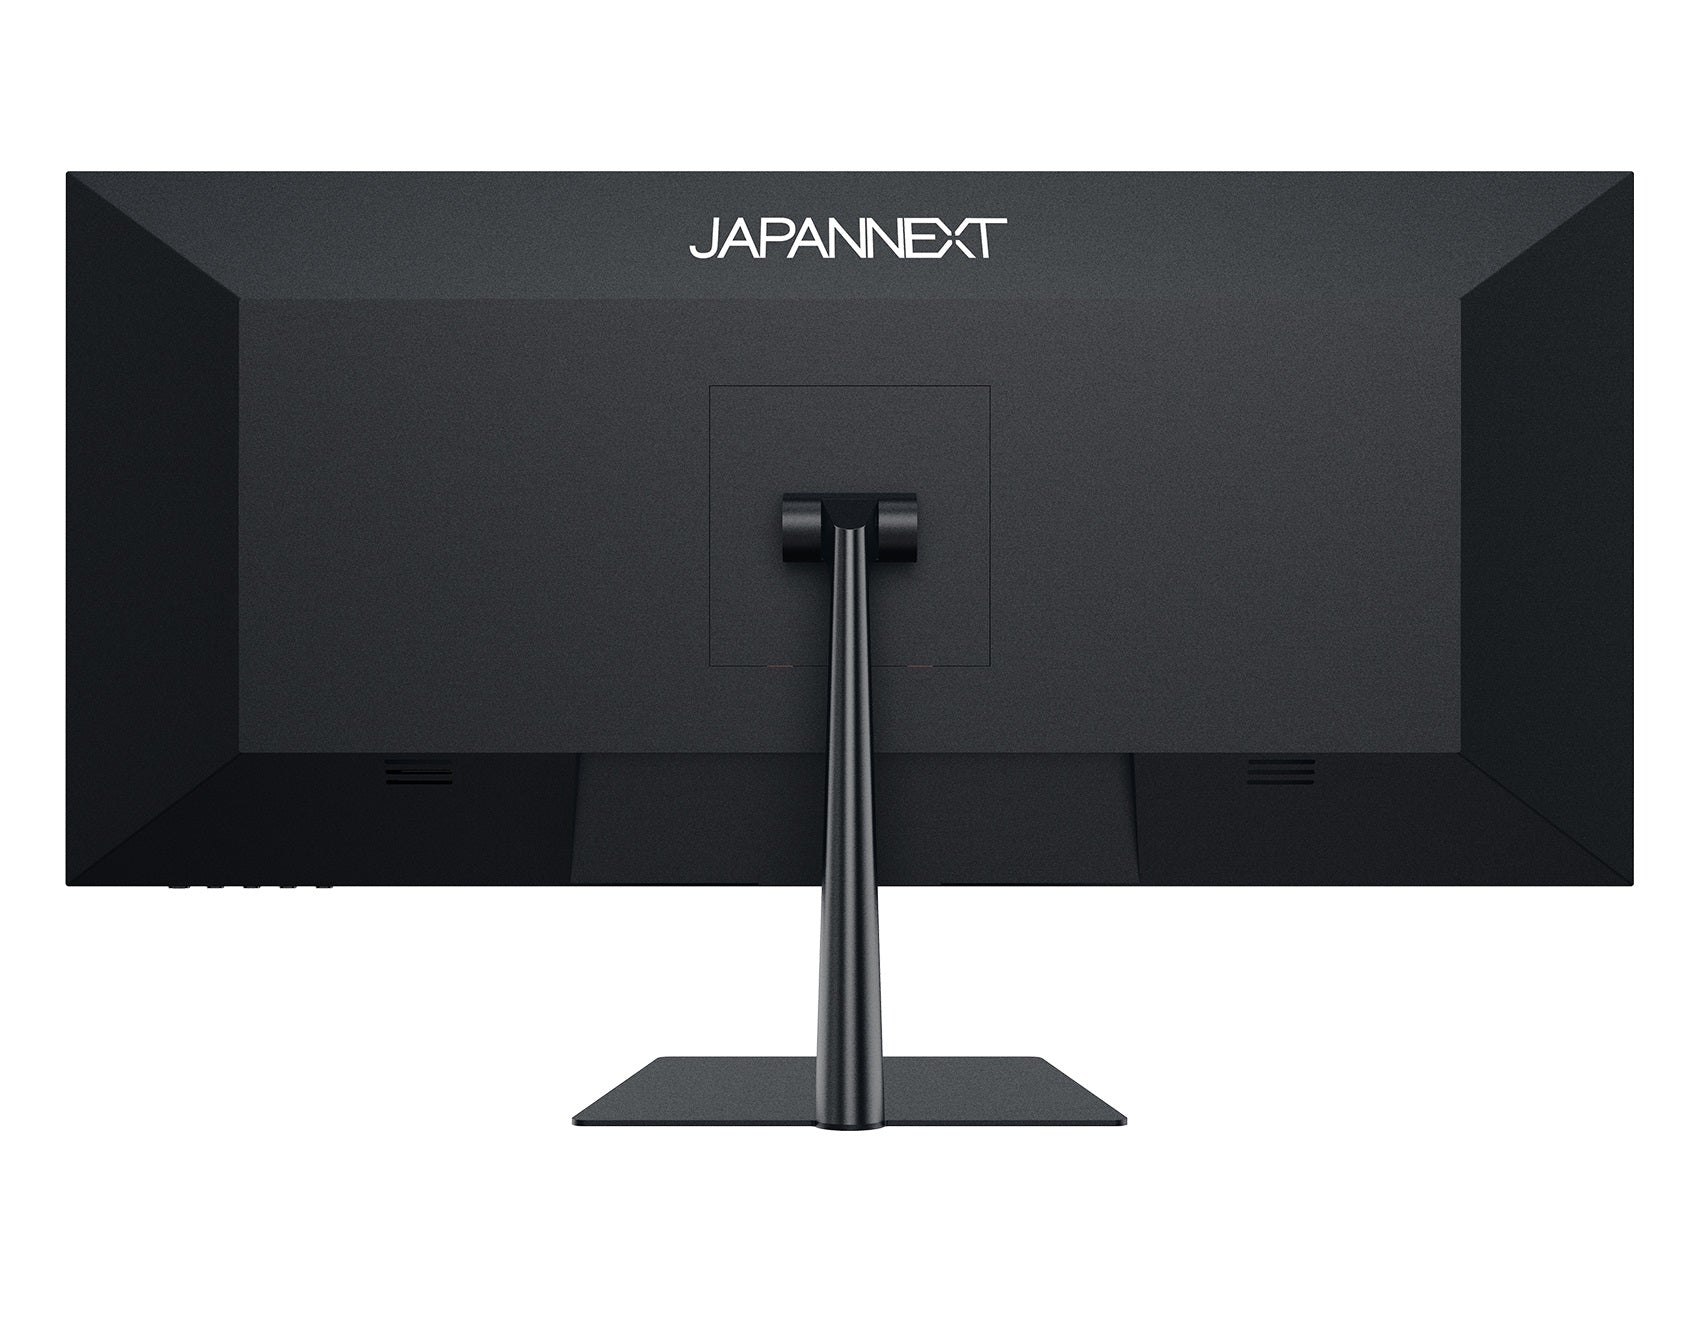 JAPANNEXT 29インチ ワイドFHD(2560 x 1080) 液晶モニター JN 